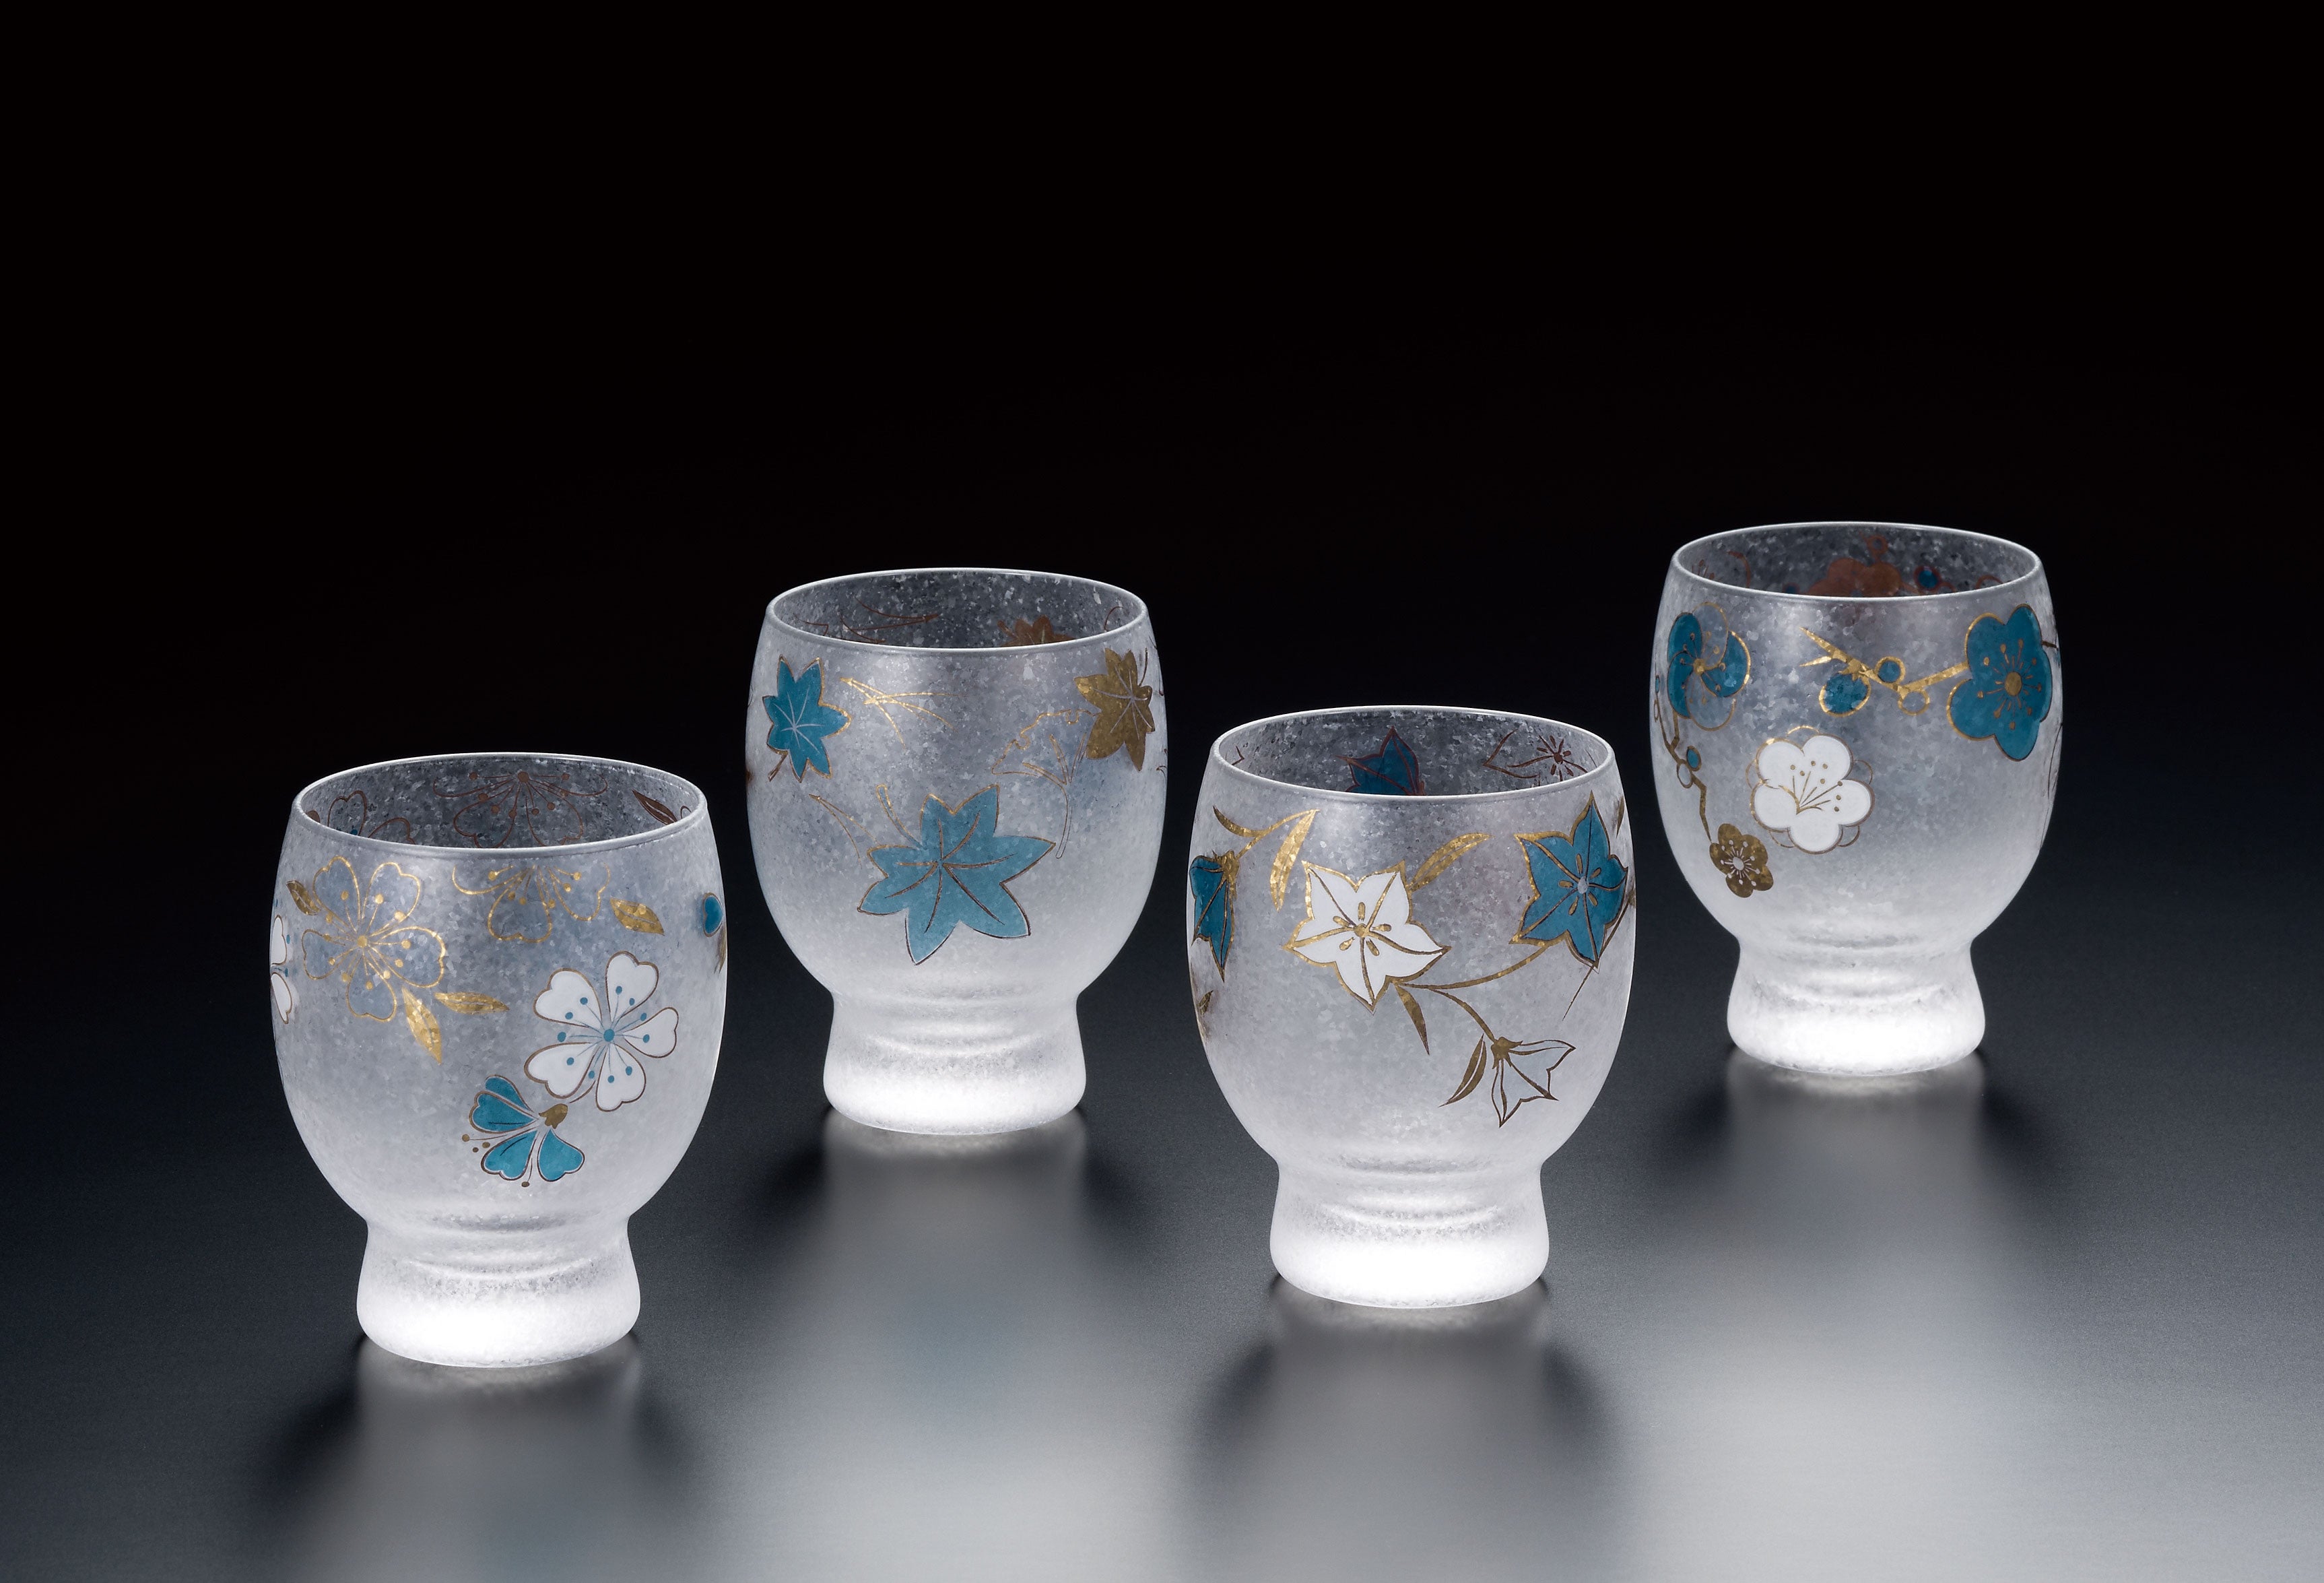 Nippon Taste Shiki-Meguri Four Season Sake Glass Gift Set - Set of 4 with wooden box